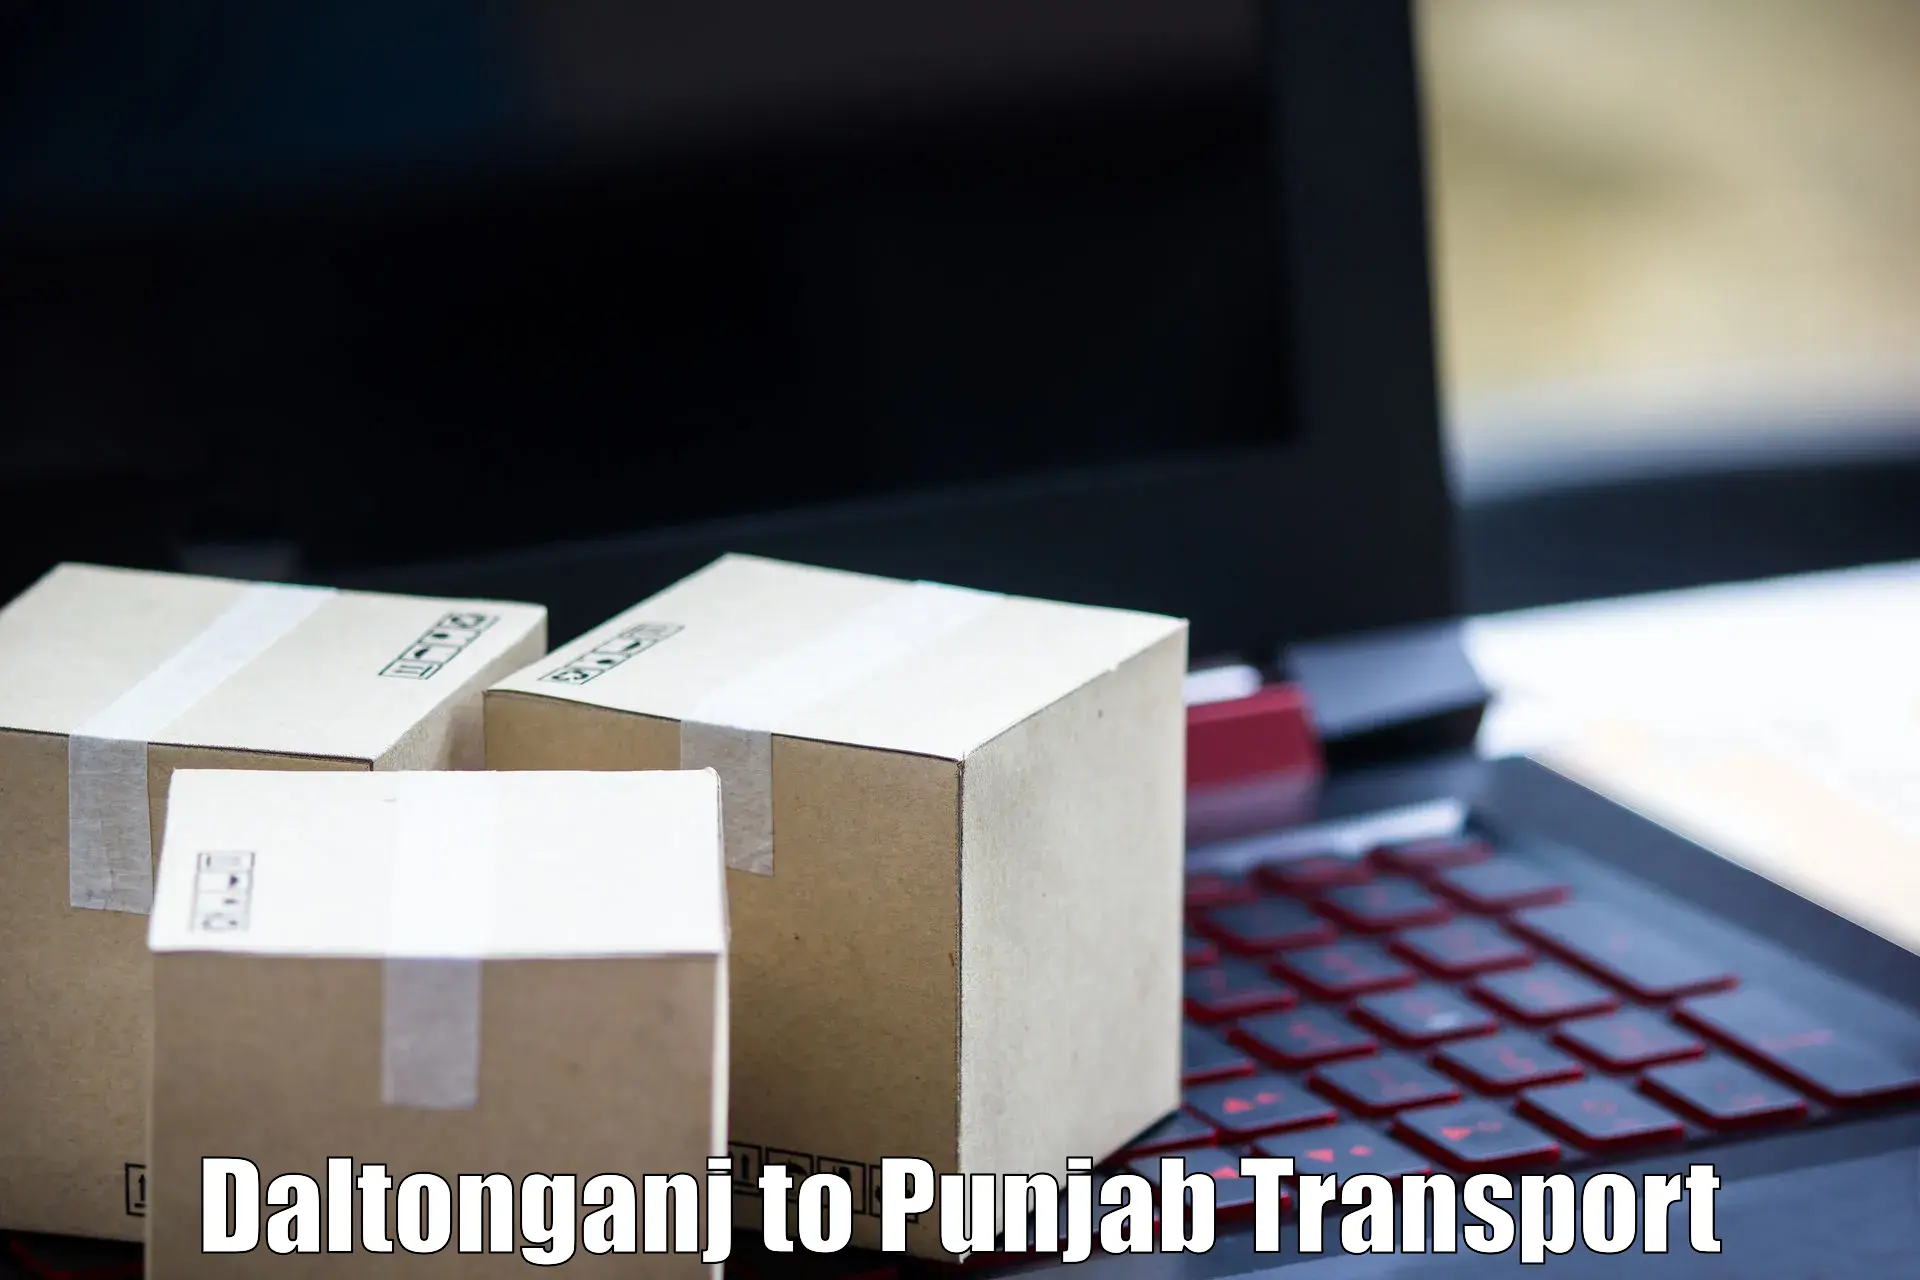 Bike transport service Daltonganj to Punjab